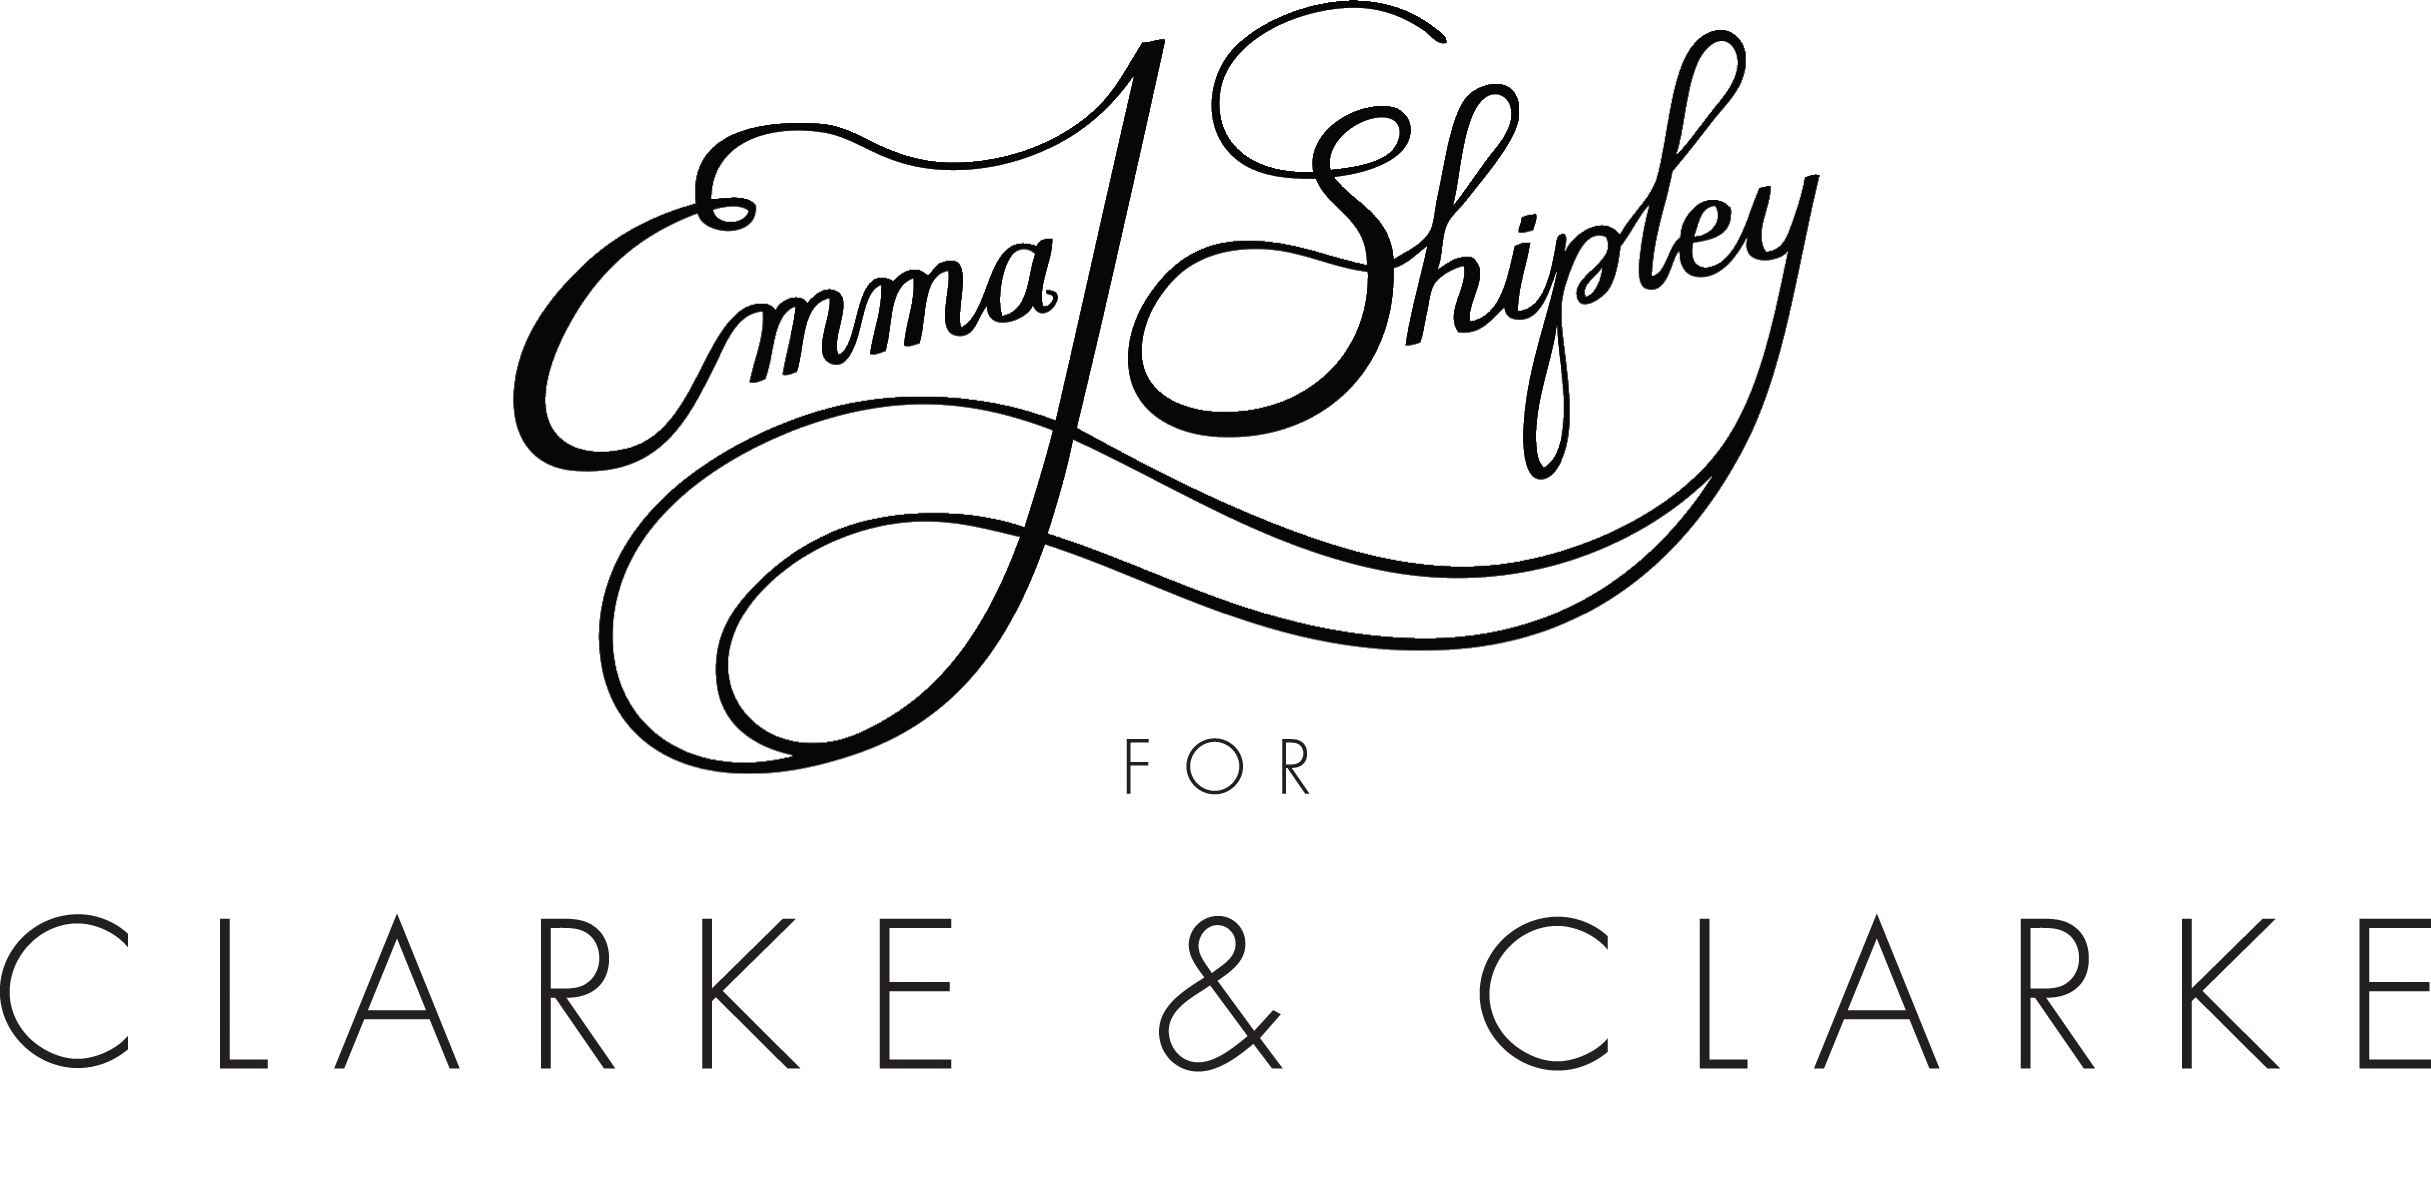 Emma J Shipley for Clarke & Clarke